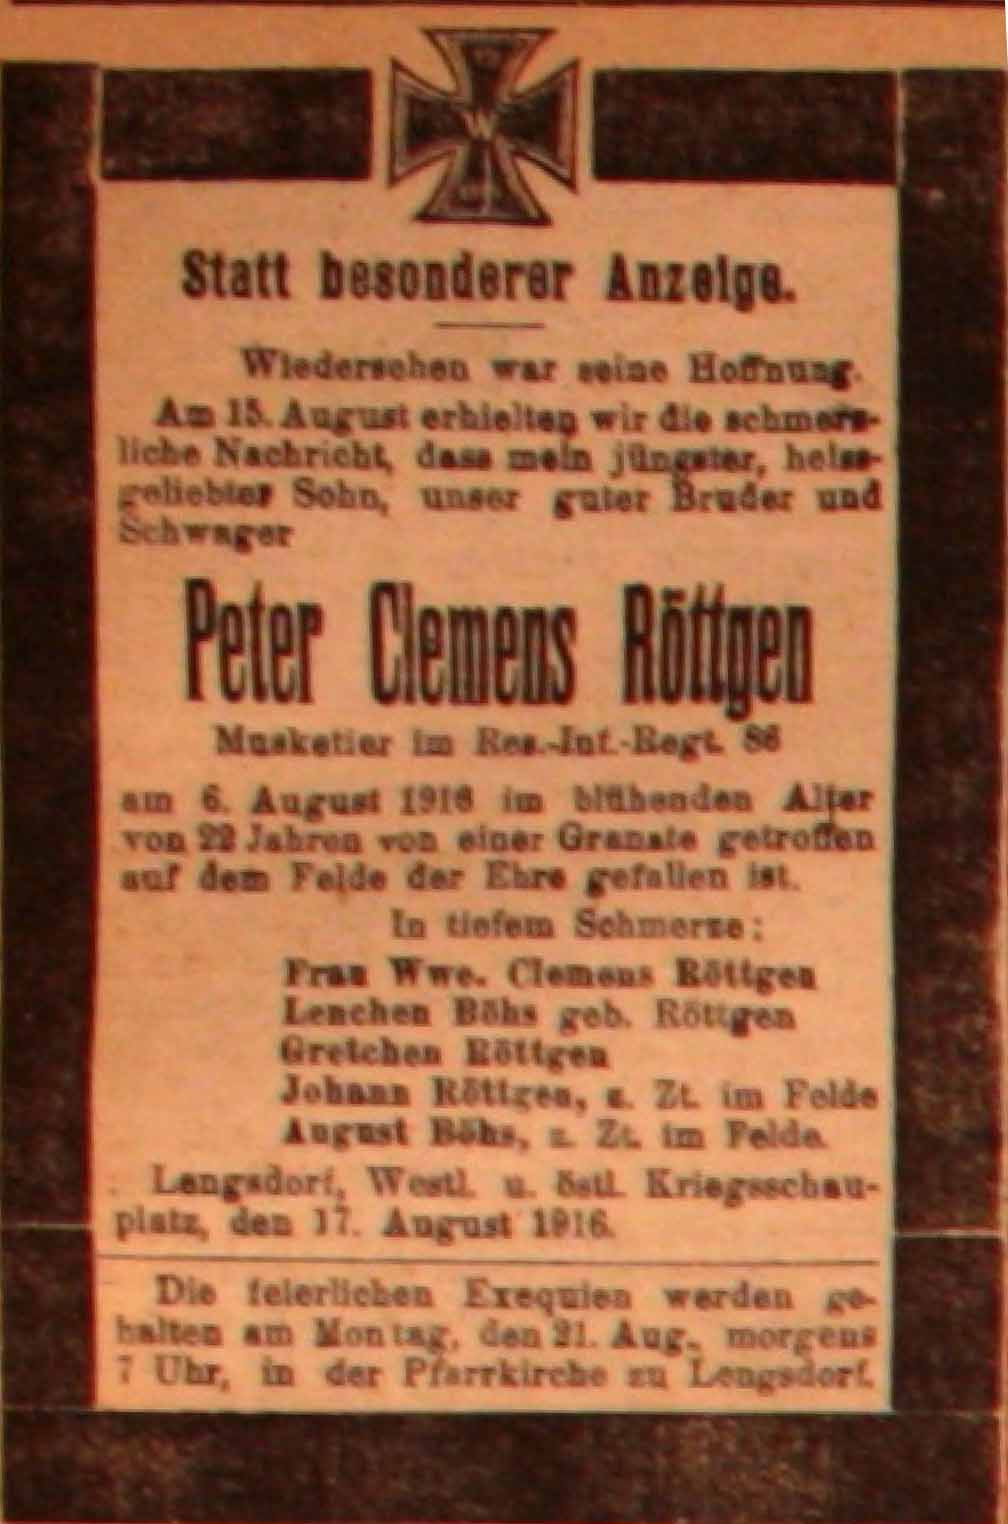 Anzeige in derDeutschen Reichs-Zeitung vom 18. August 1916